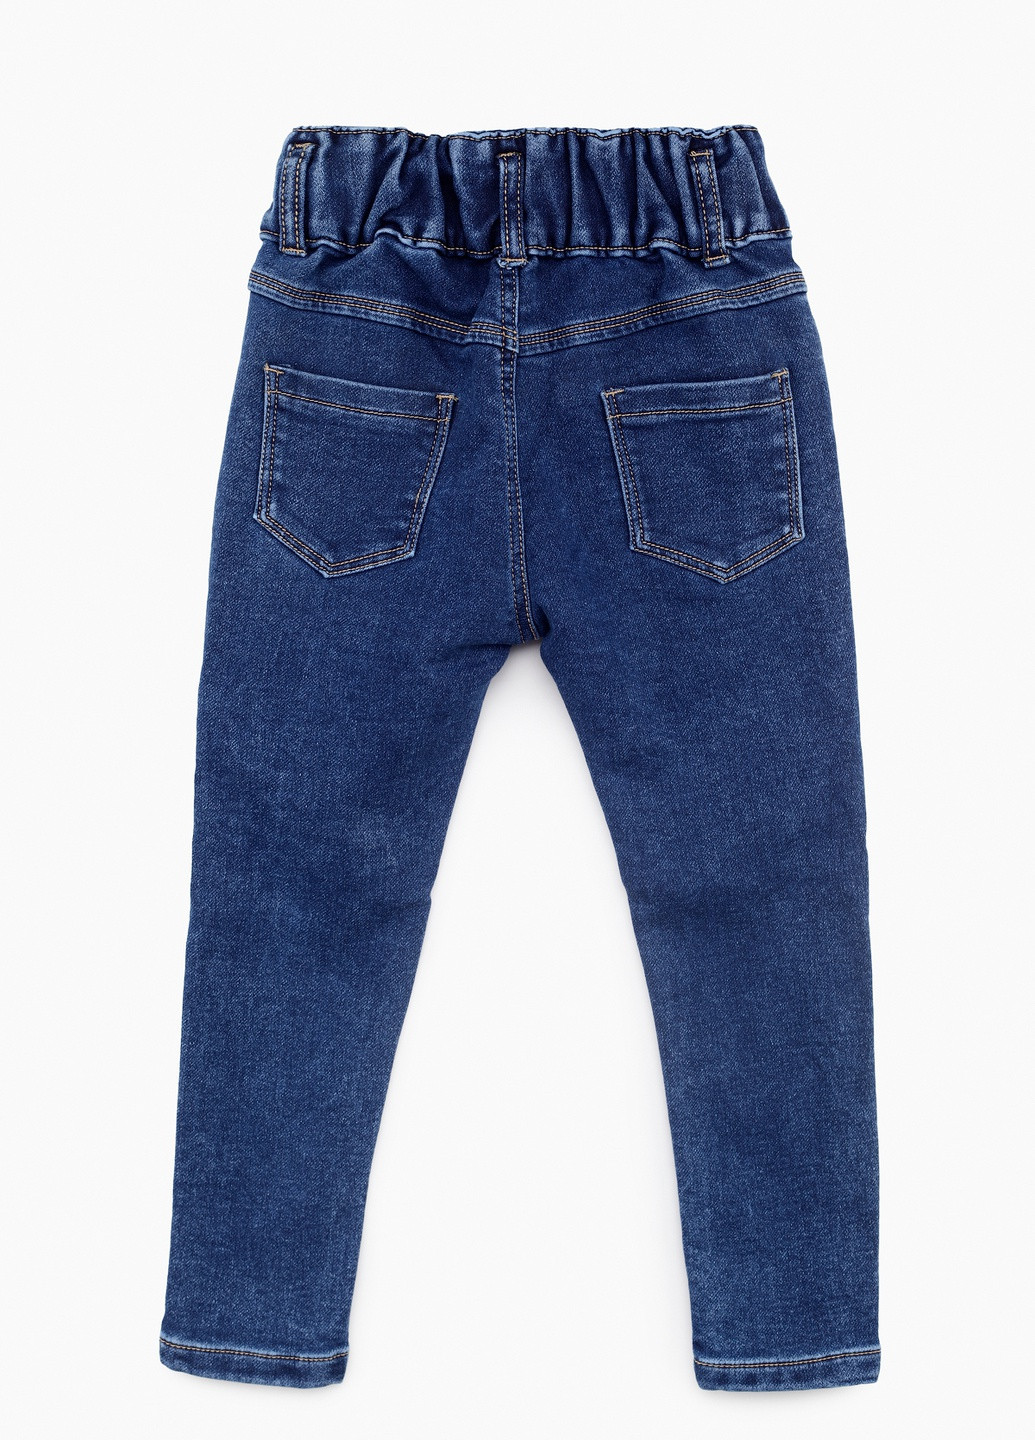 Синие демисезонные джинсы S&D